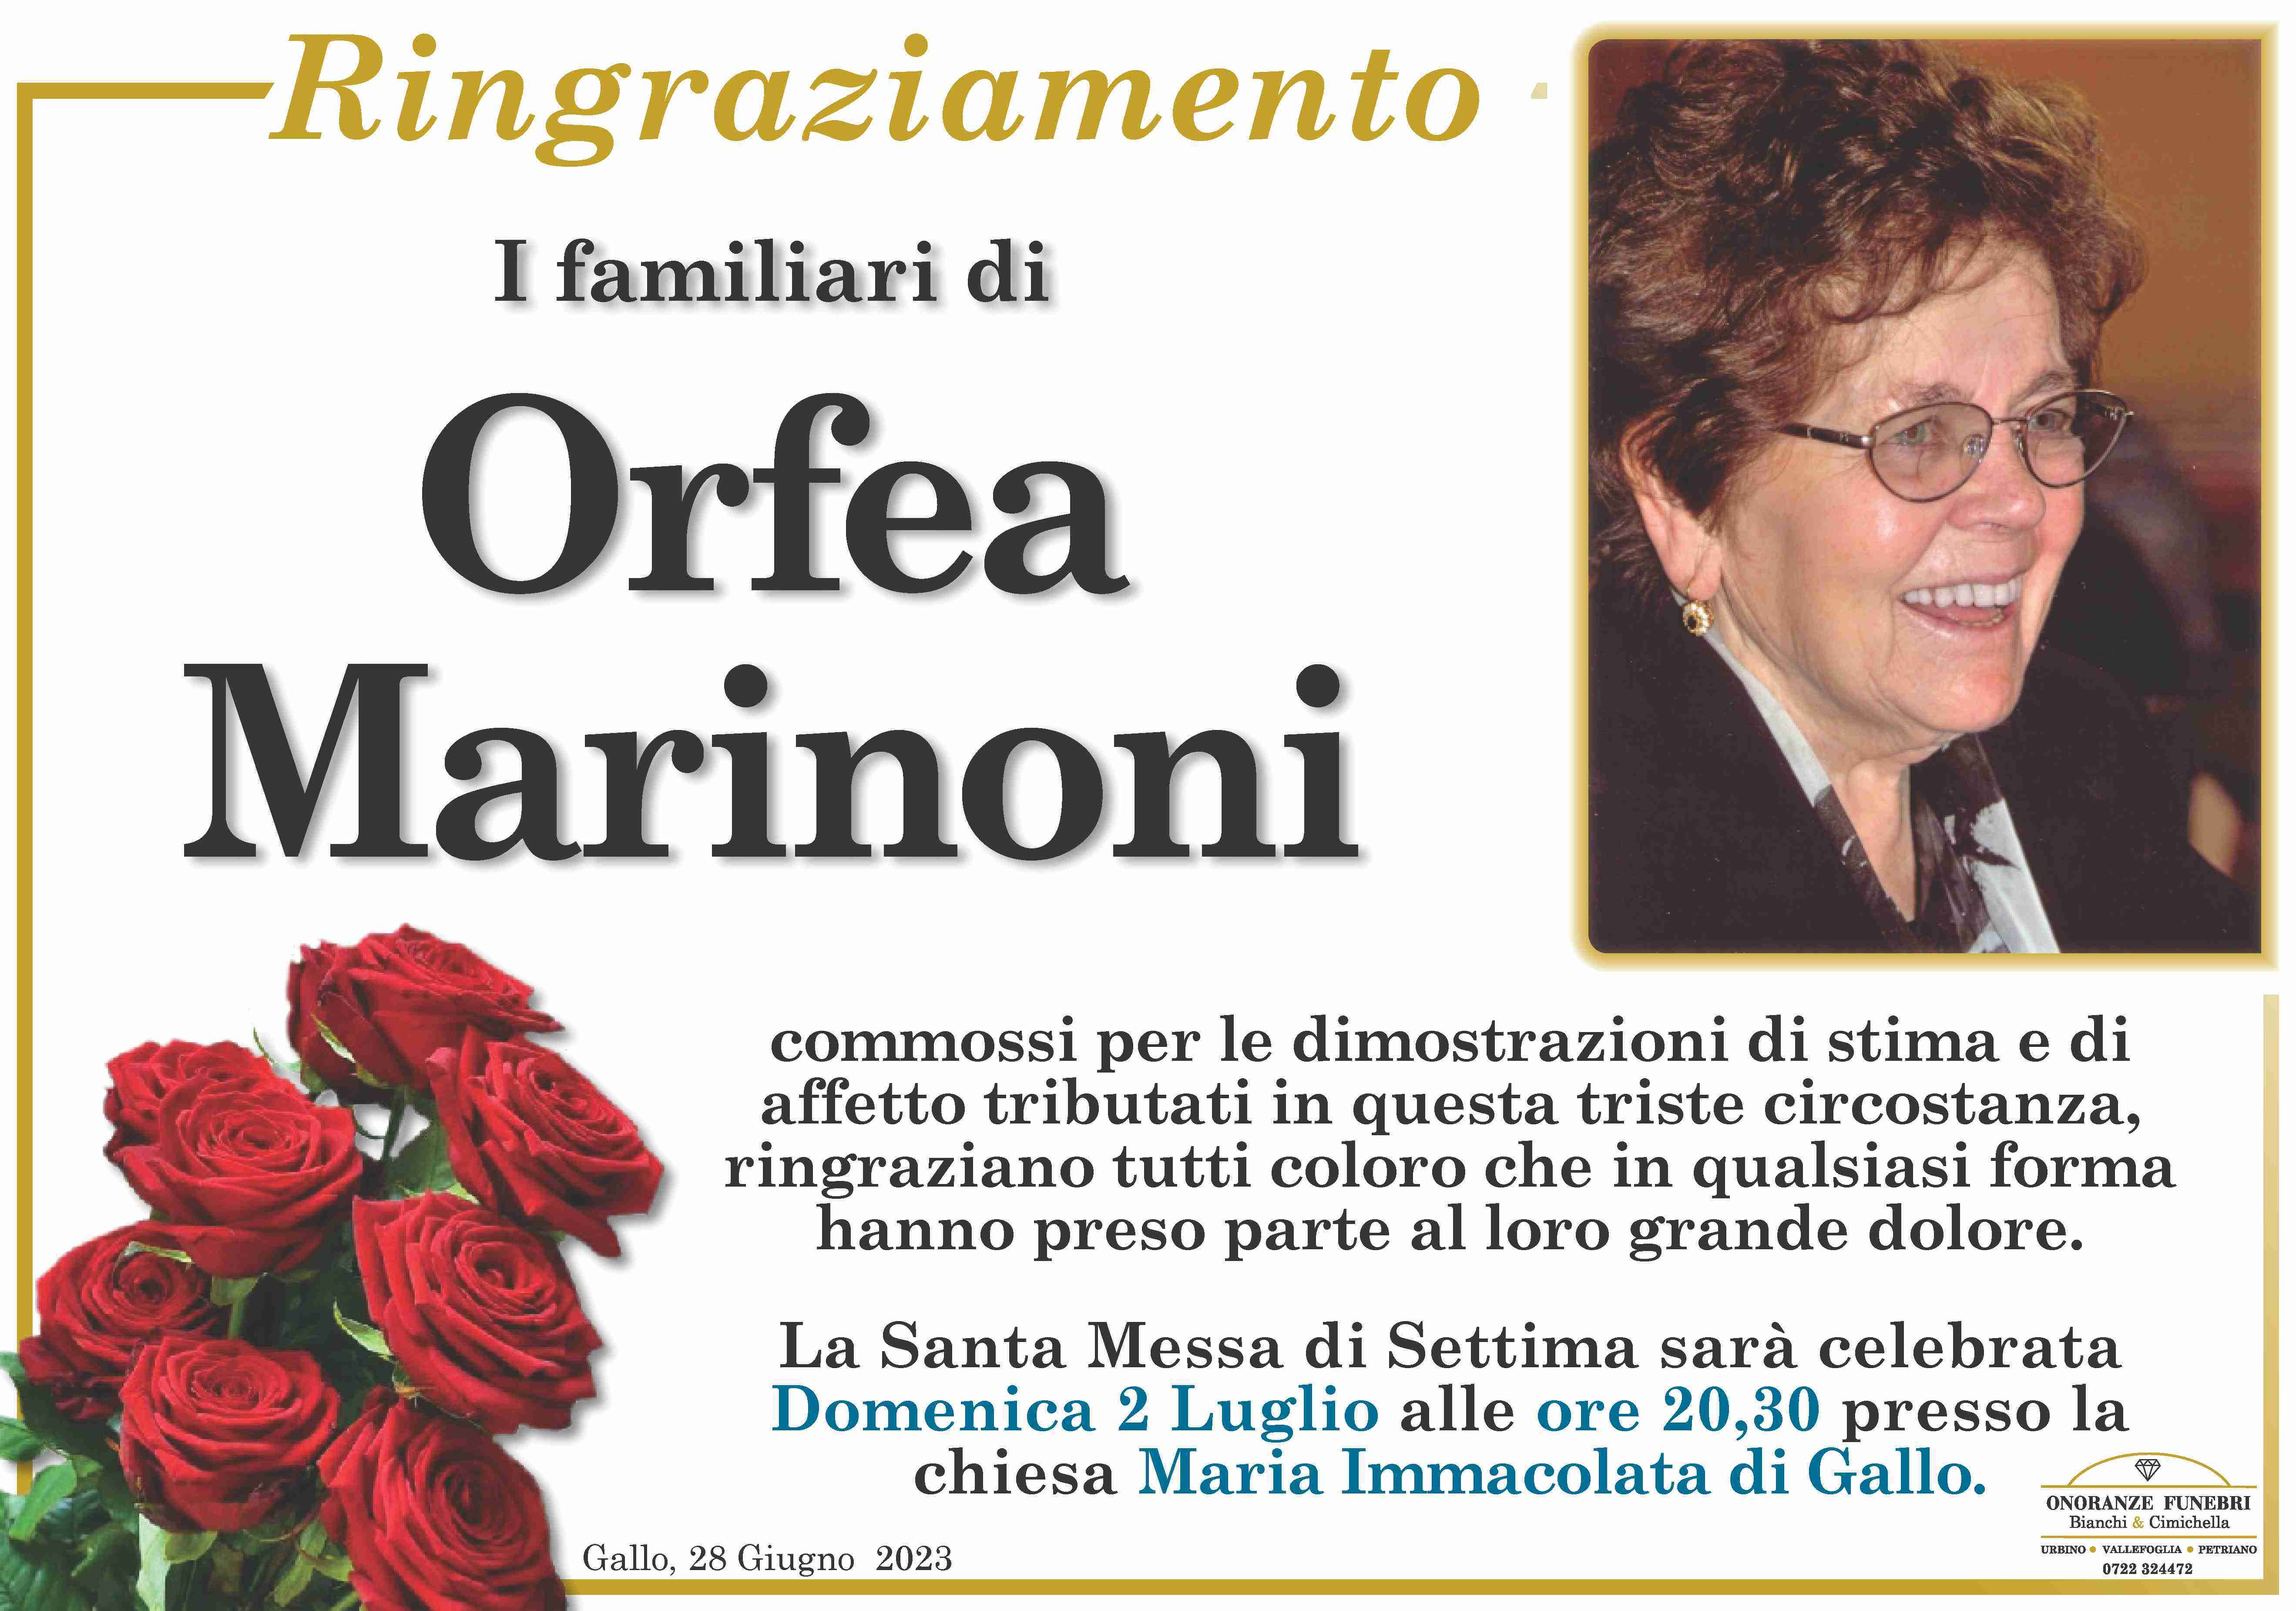 Orfea Marinoni